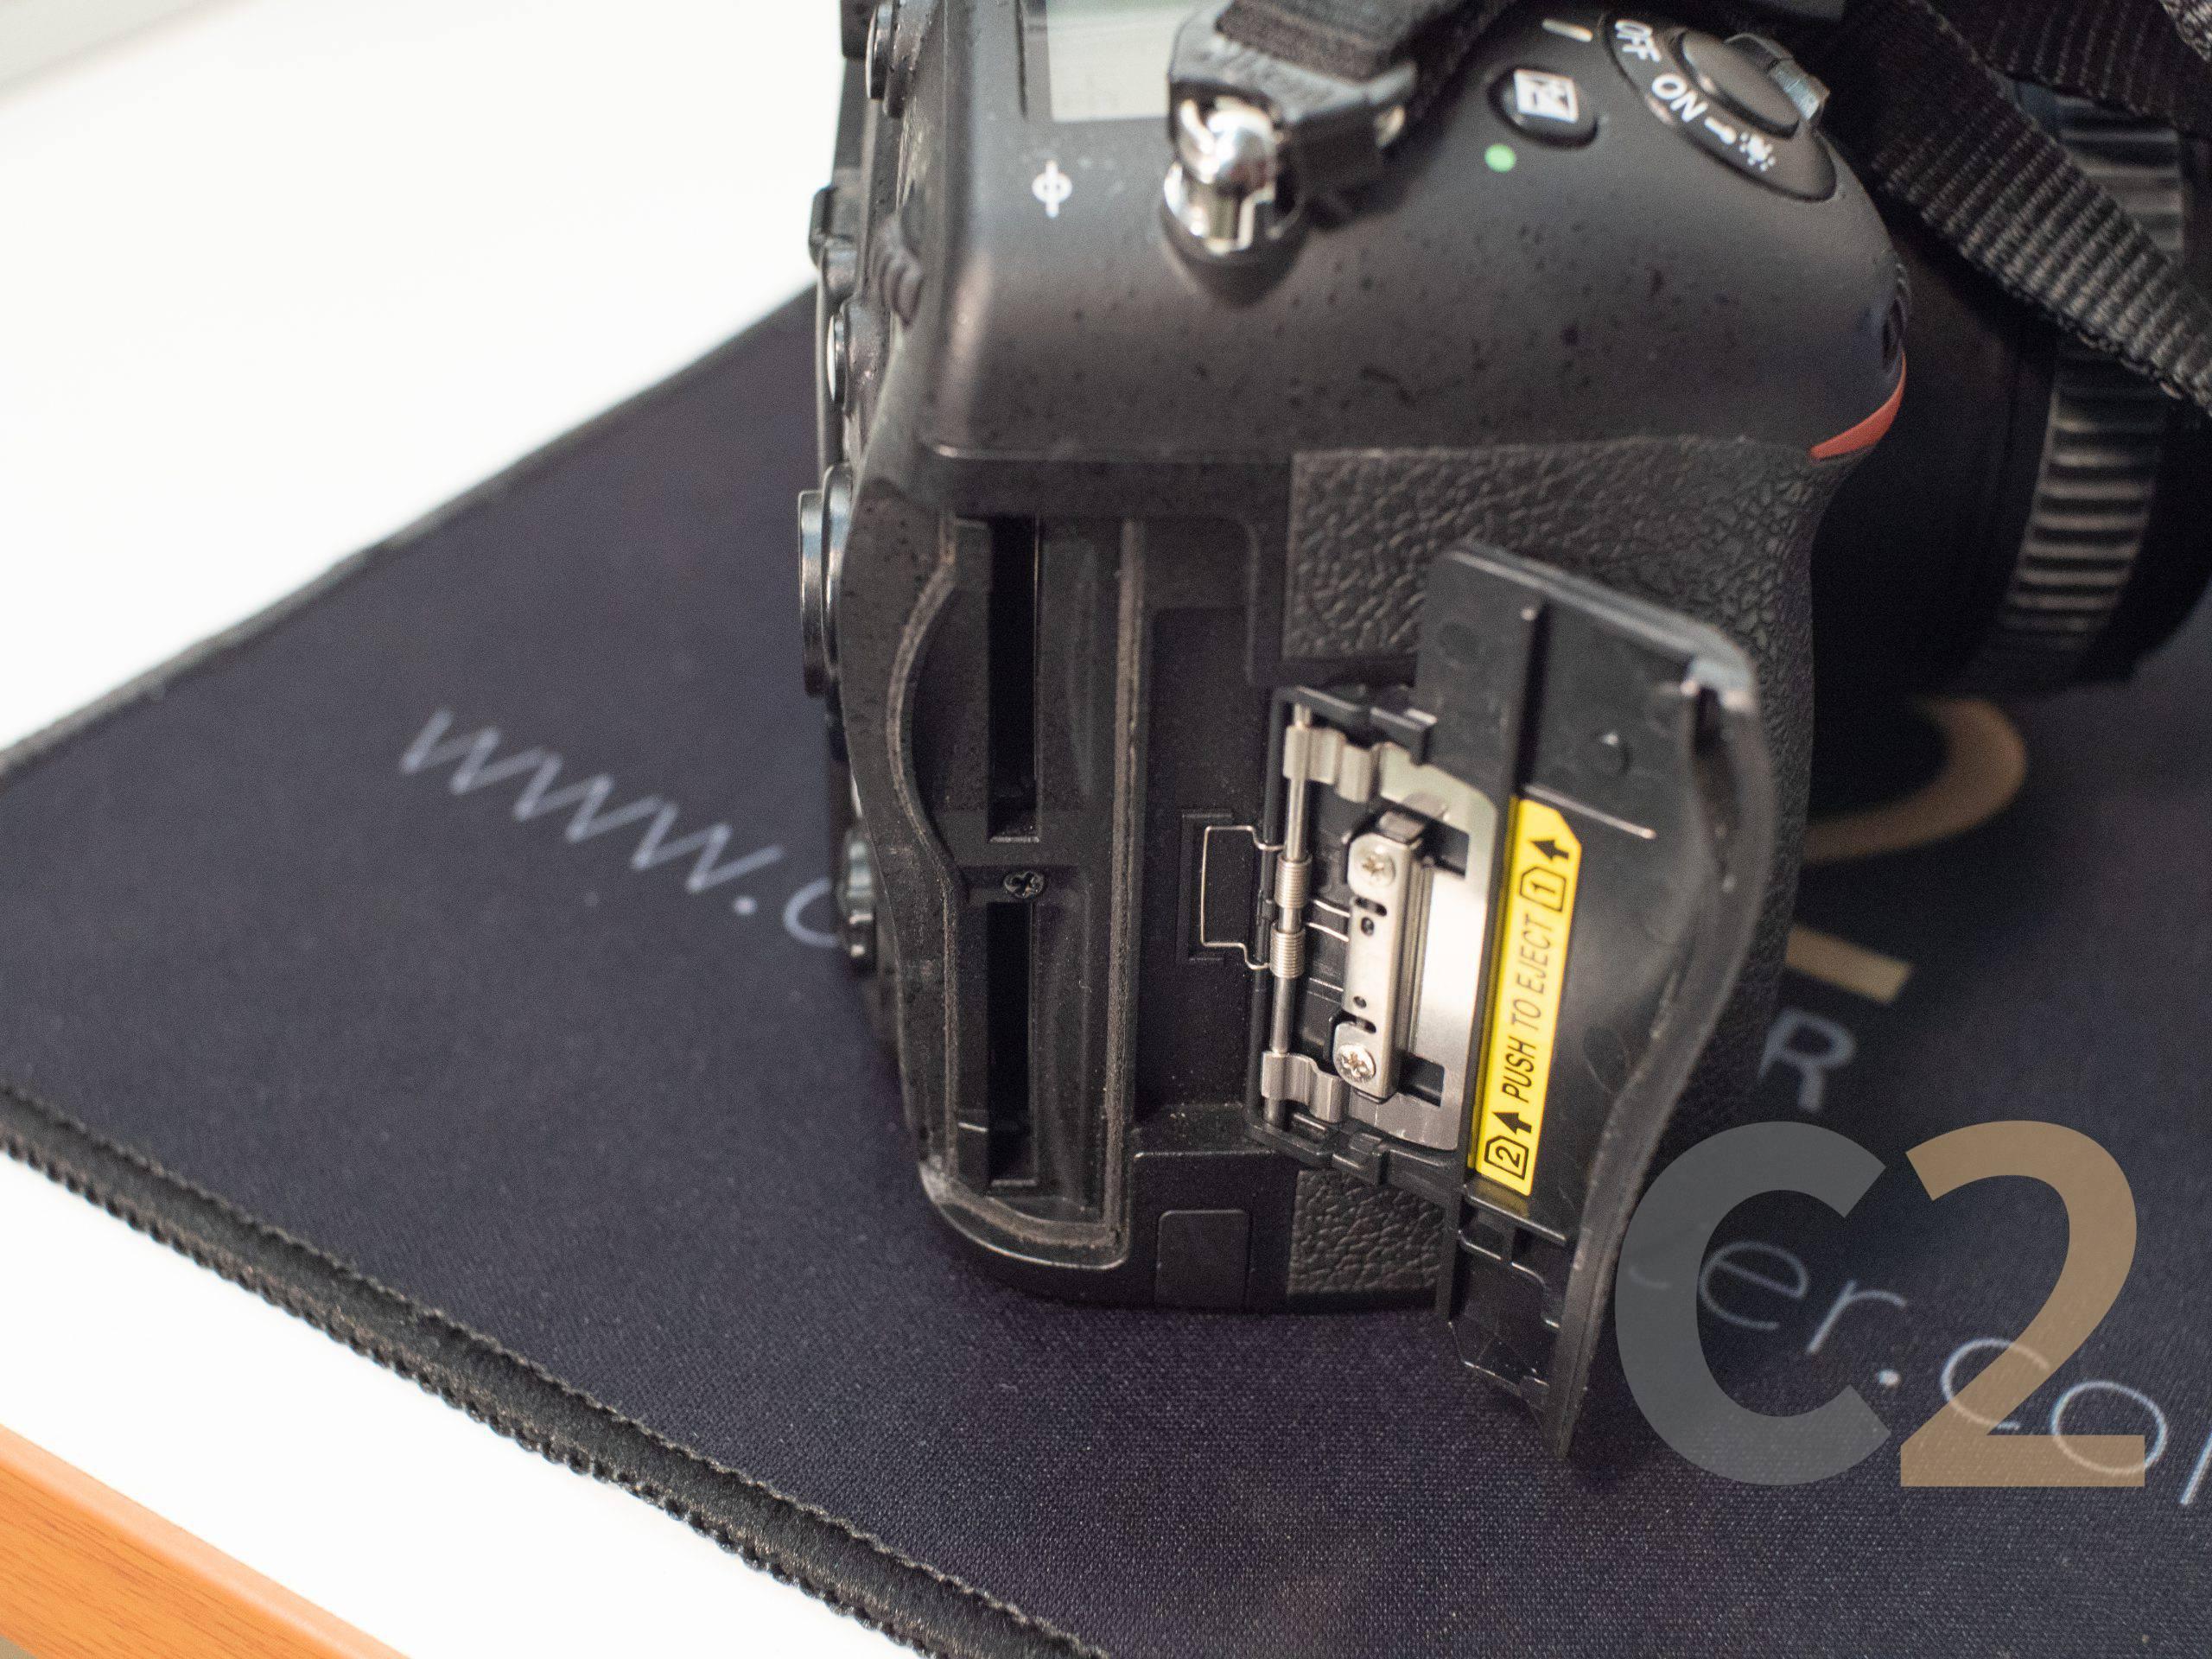 （二手）尼康/Nikon D80 (18-55mm) 單反 旅行 Camera 90% NEW - C2 Computer